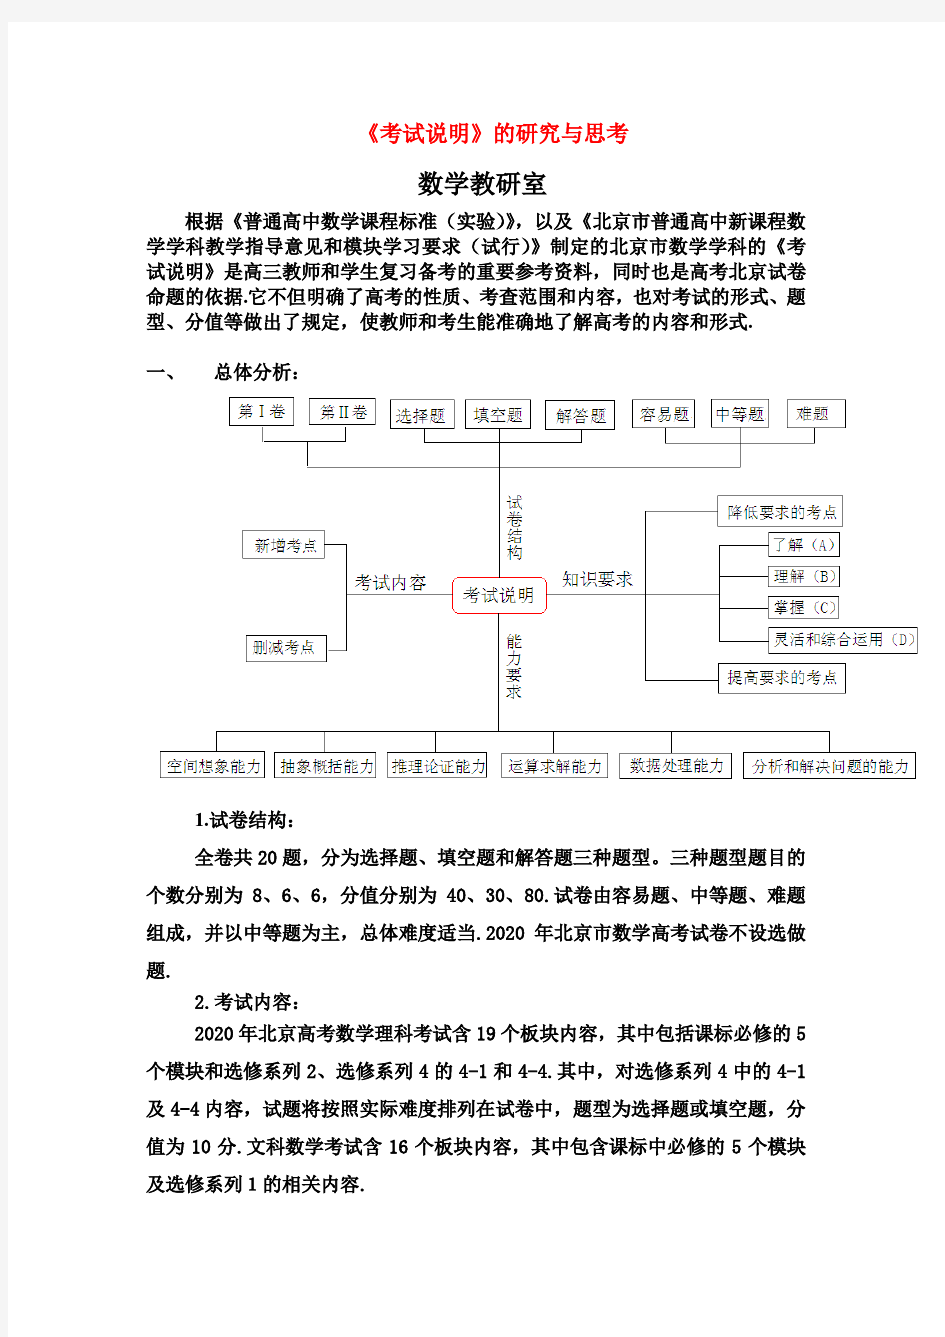 2020北京高三数学高考考试大纲说明及解析素材